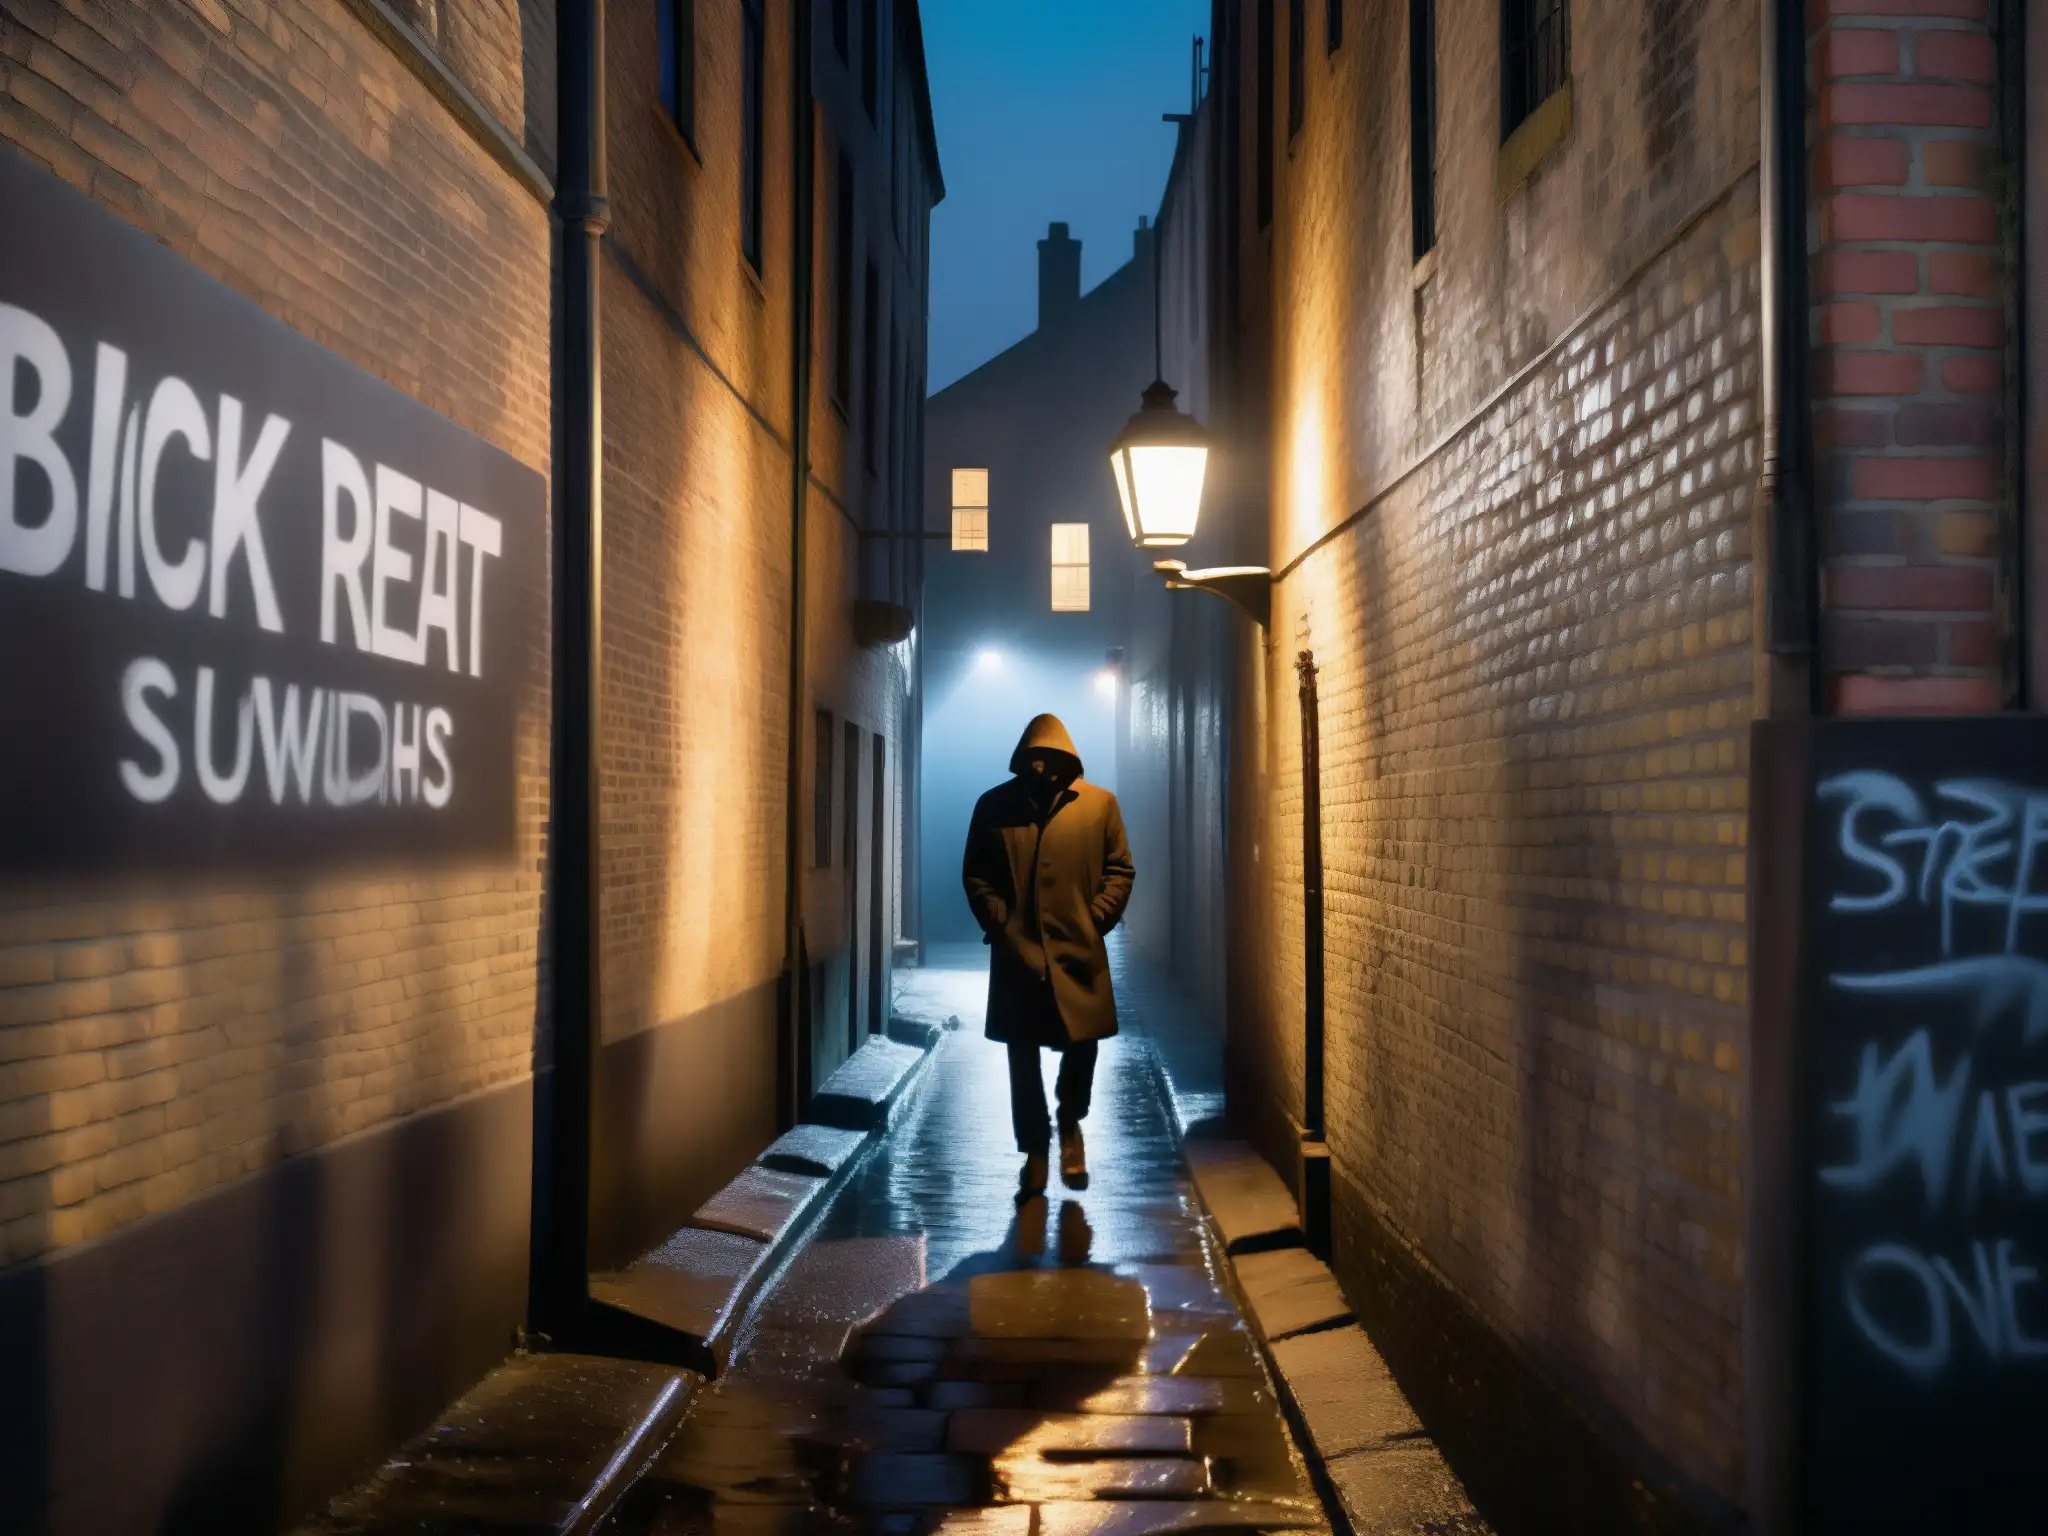 Una noche misteriosa en un callejón sombrío, con graffiti y una figura en silueta, perpetuando supersticiones en leyendas urbanas